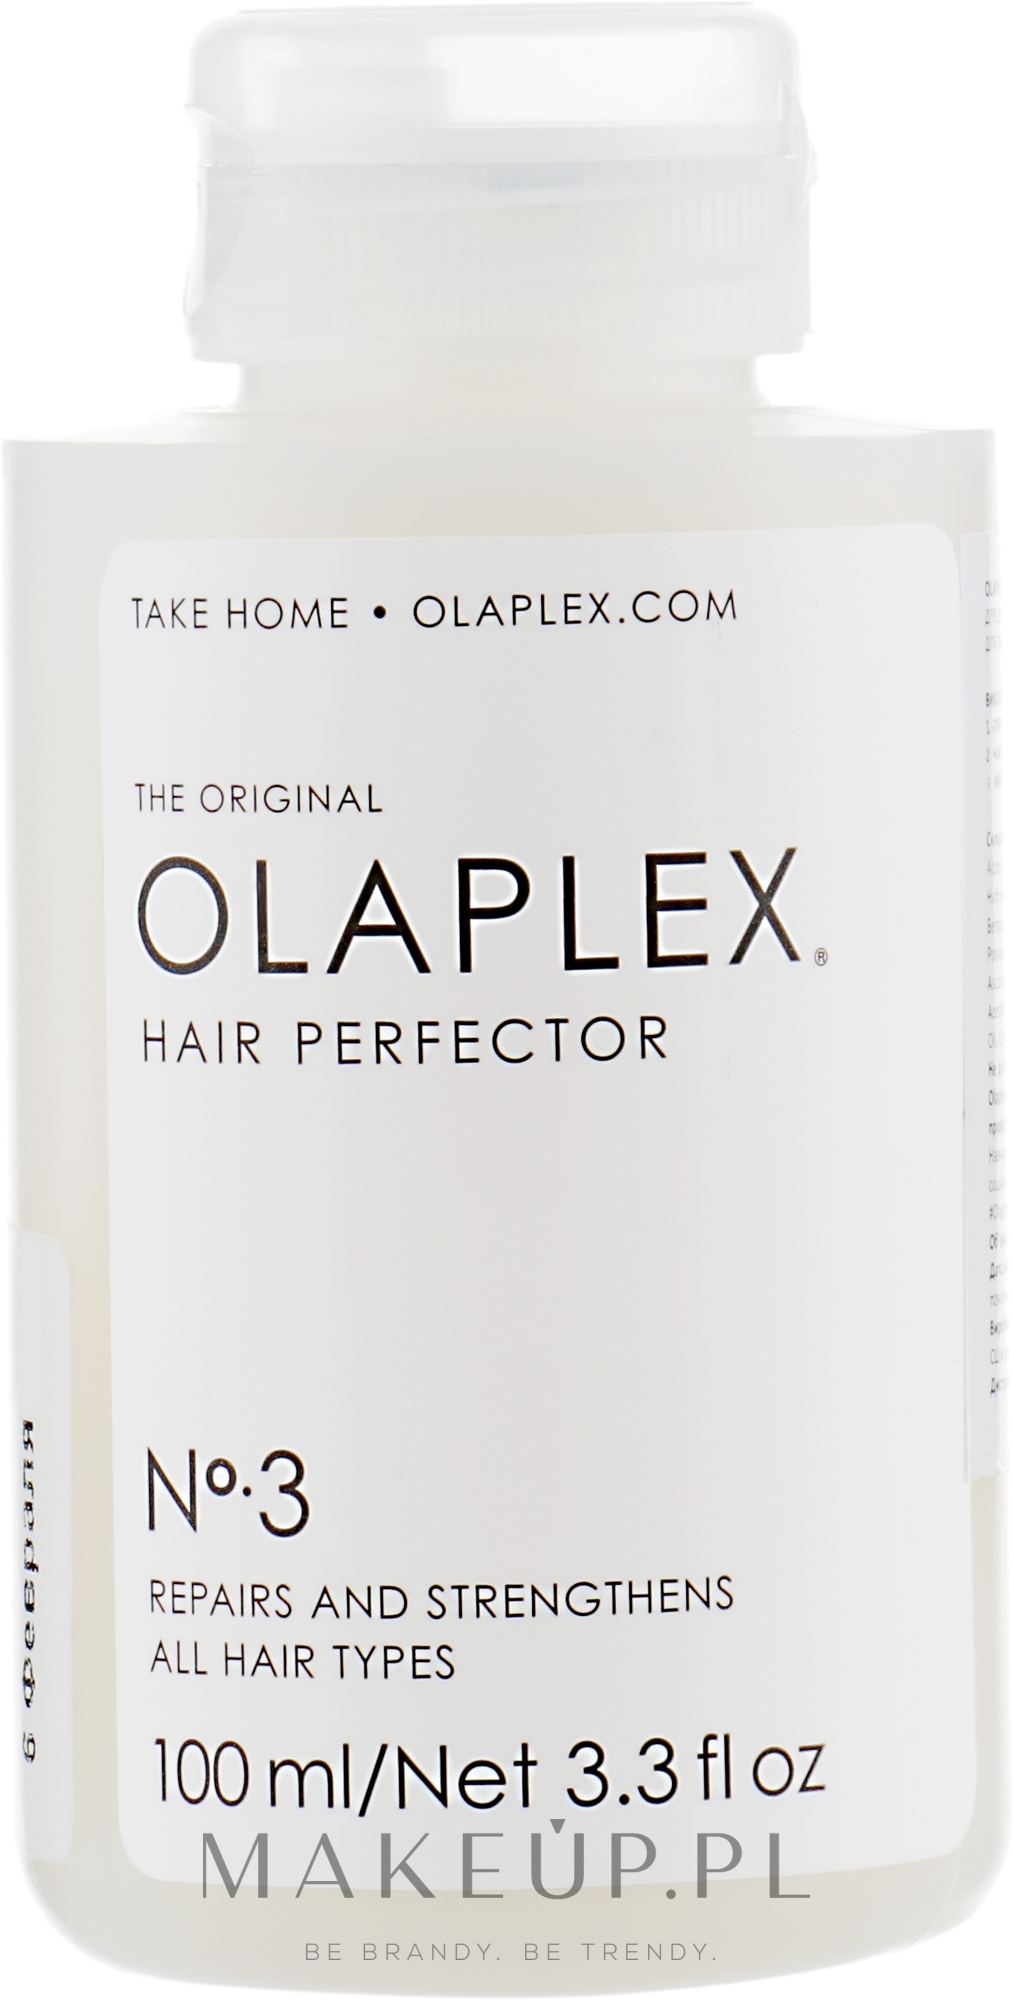 Eliksir odbudowująco-regenerujący do włosów po zabiegach chemicznych - Olaplex Hair Perfector №3 — Zdjęcie 100 ml